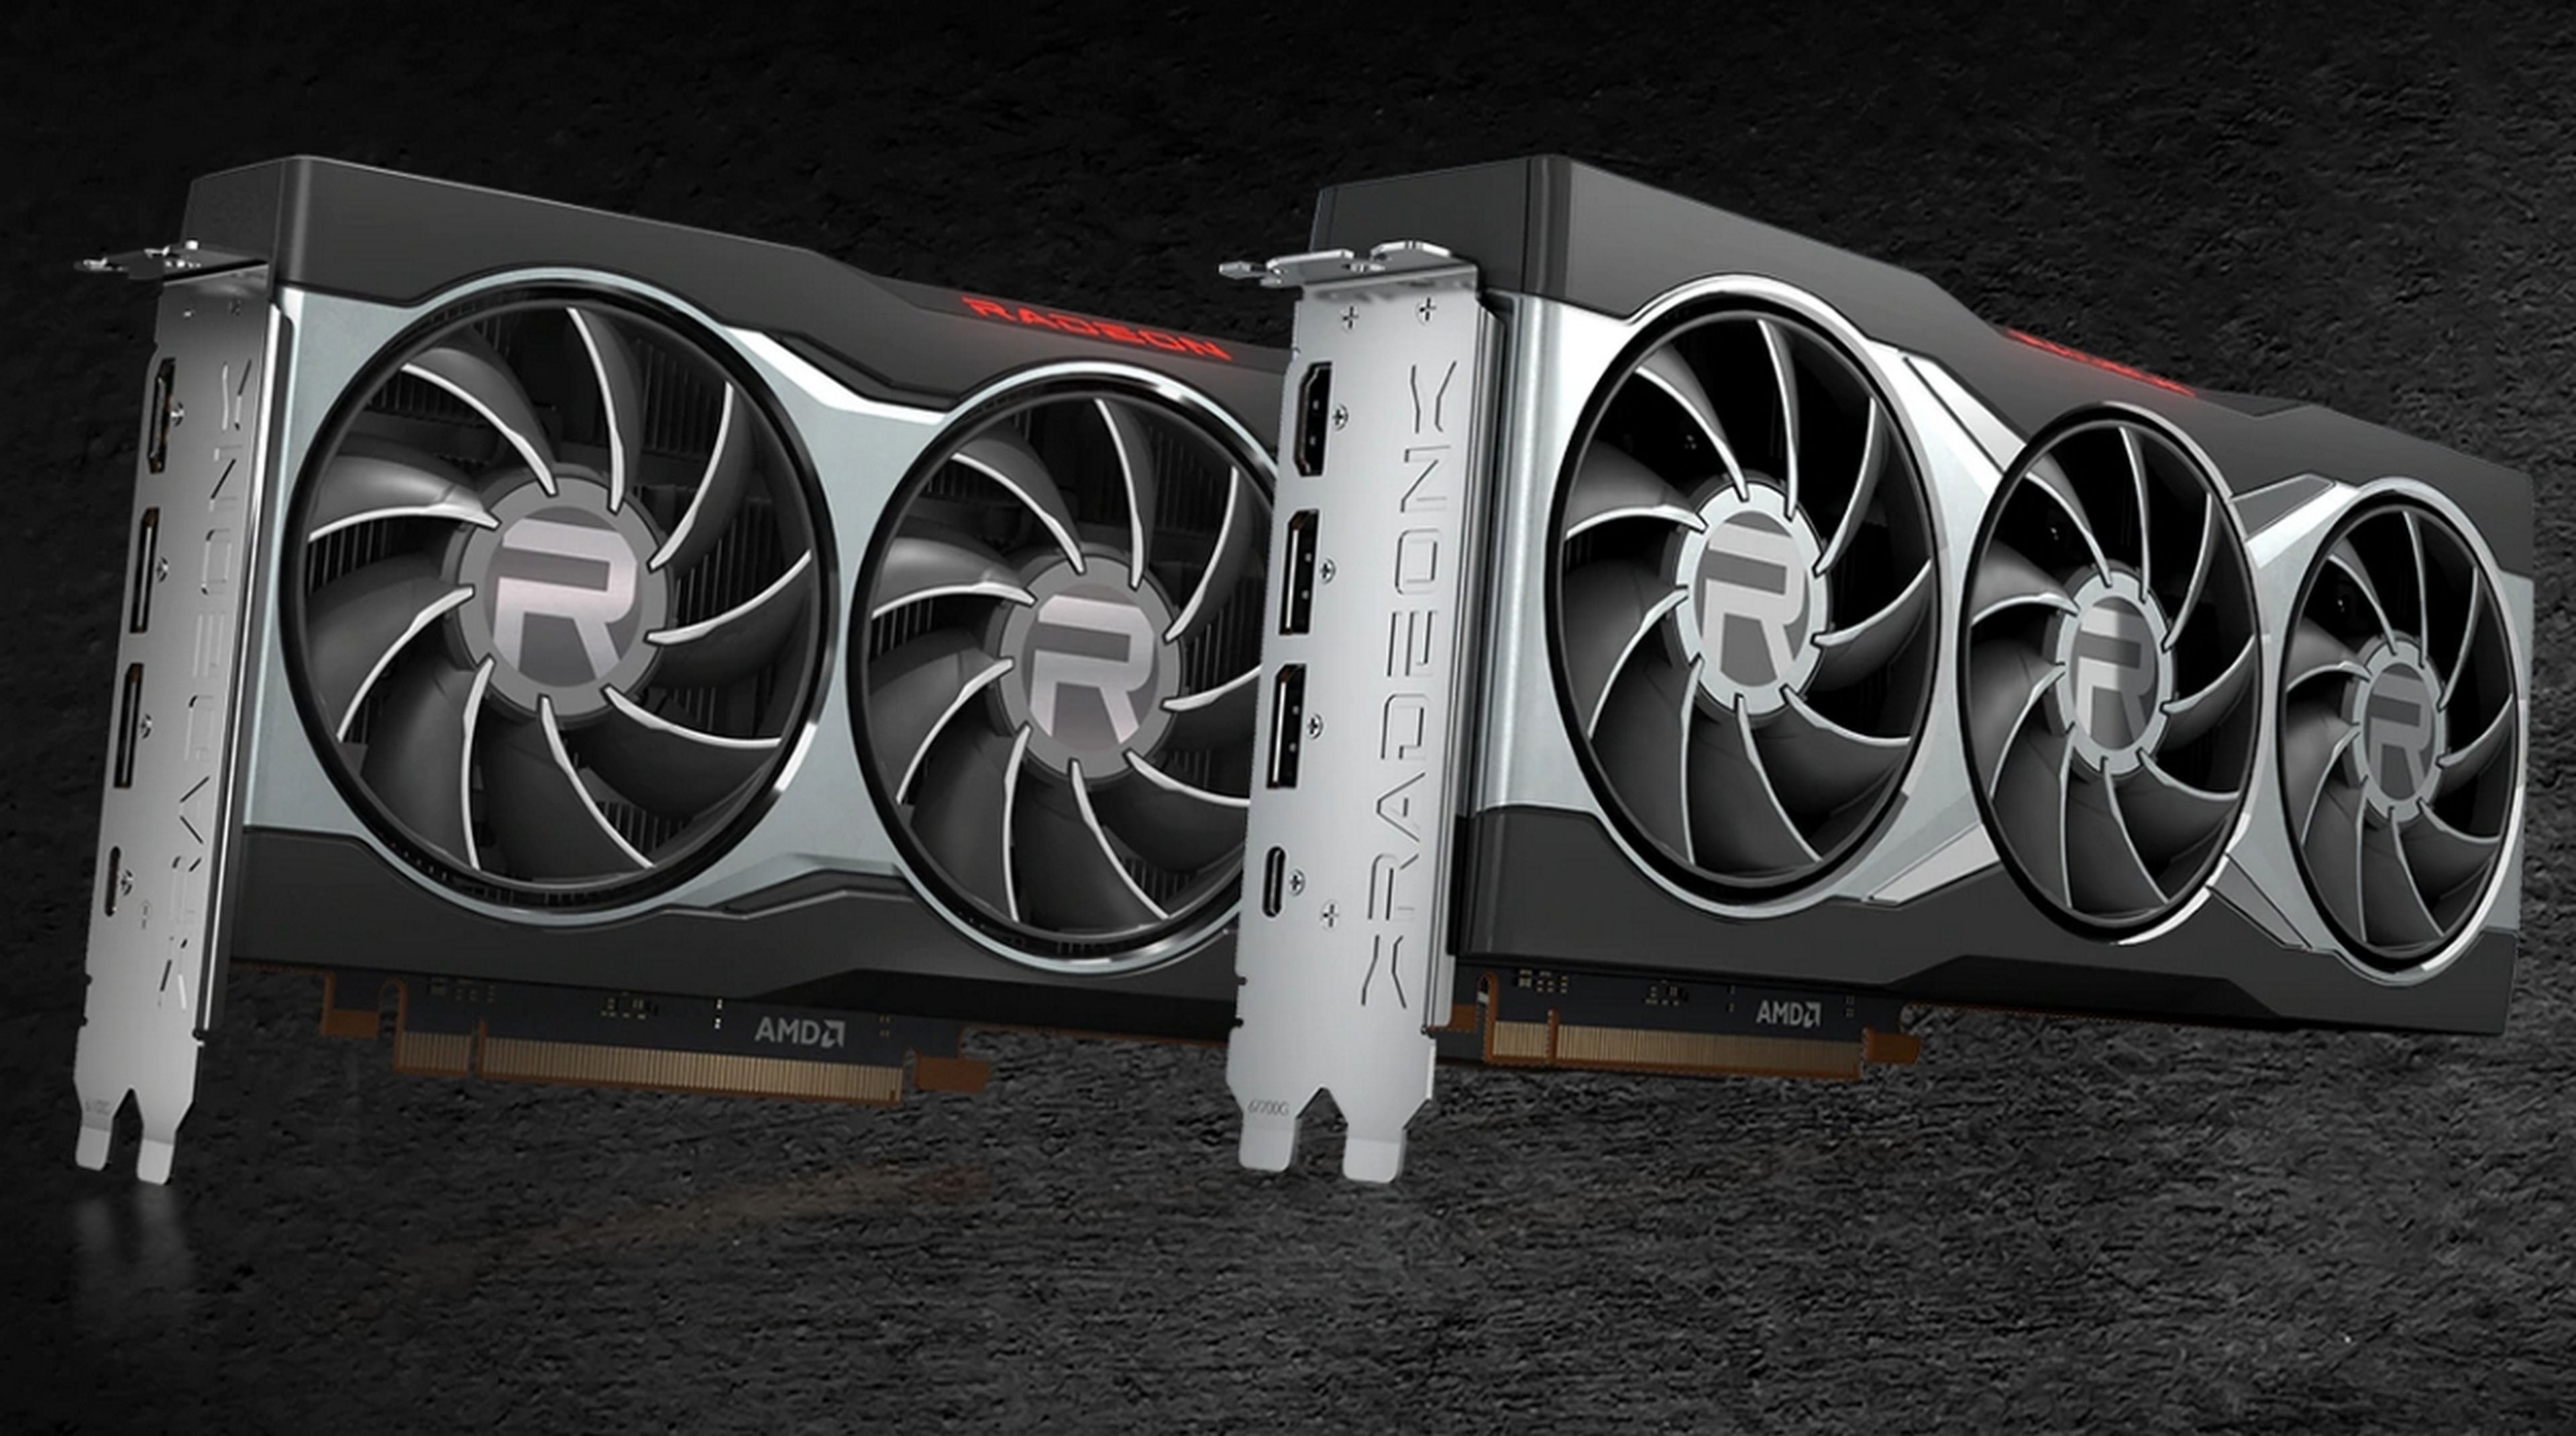 AMD desvela sus tarjetas Radeon RX 6000, más potentes que las RTX 3000 de NVIDIA y más baratas